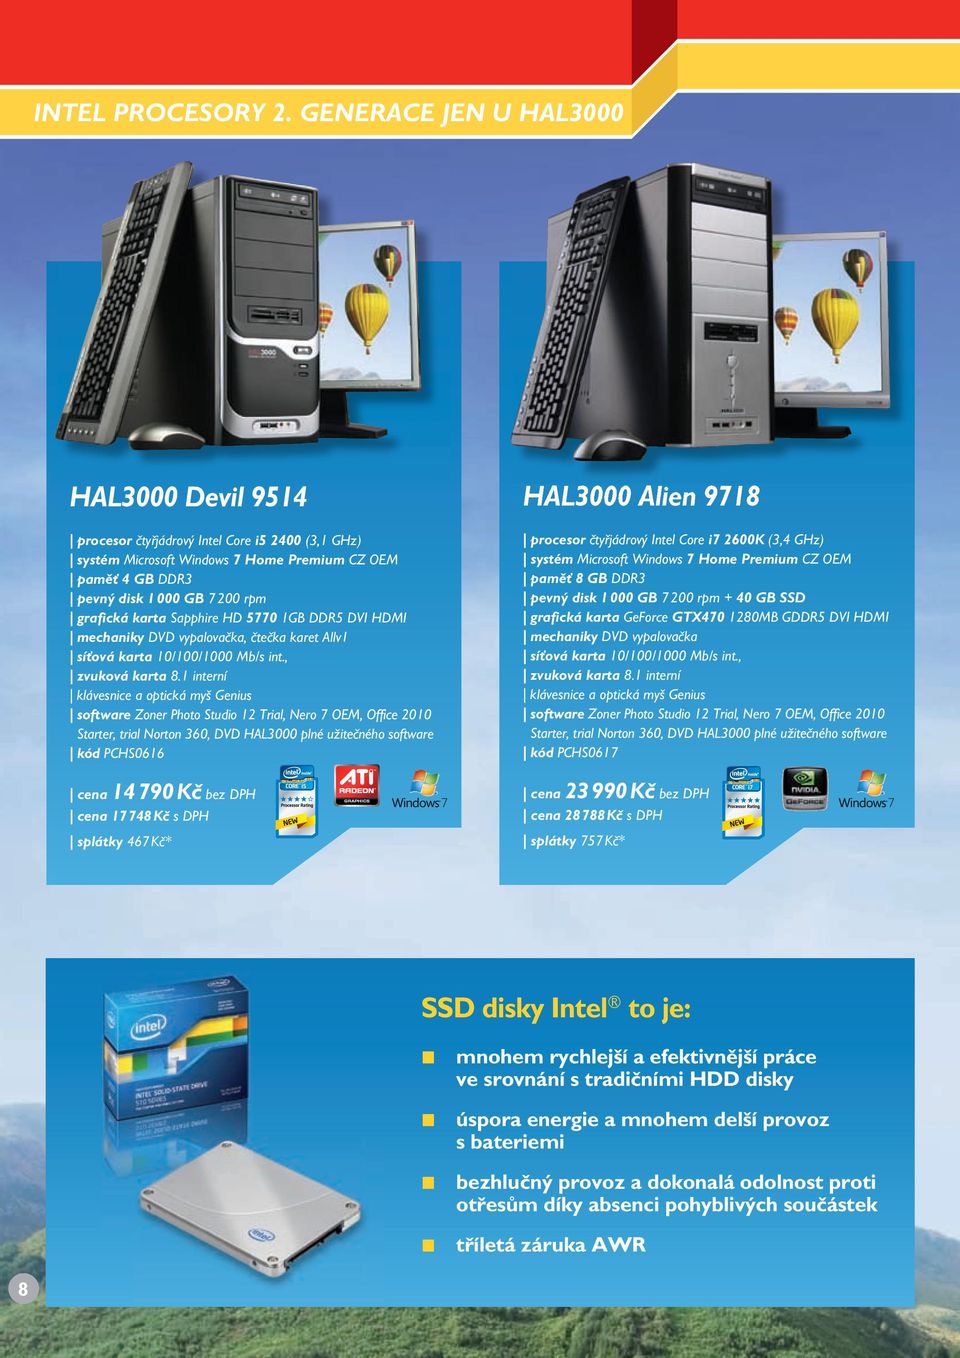 HDMI mechaniky DVD vypalovačka, čtečka karet Allv1 síťová karta 10/100/1000 Mb/s int., zvuková karta 8.